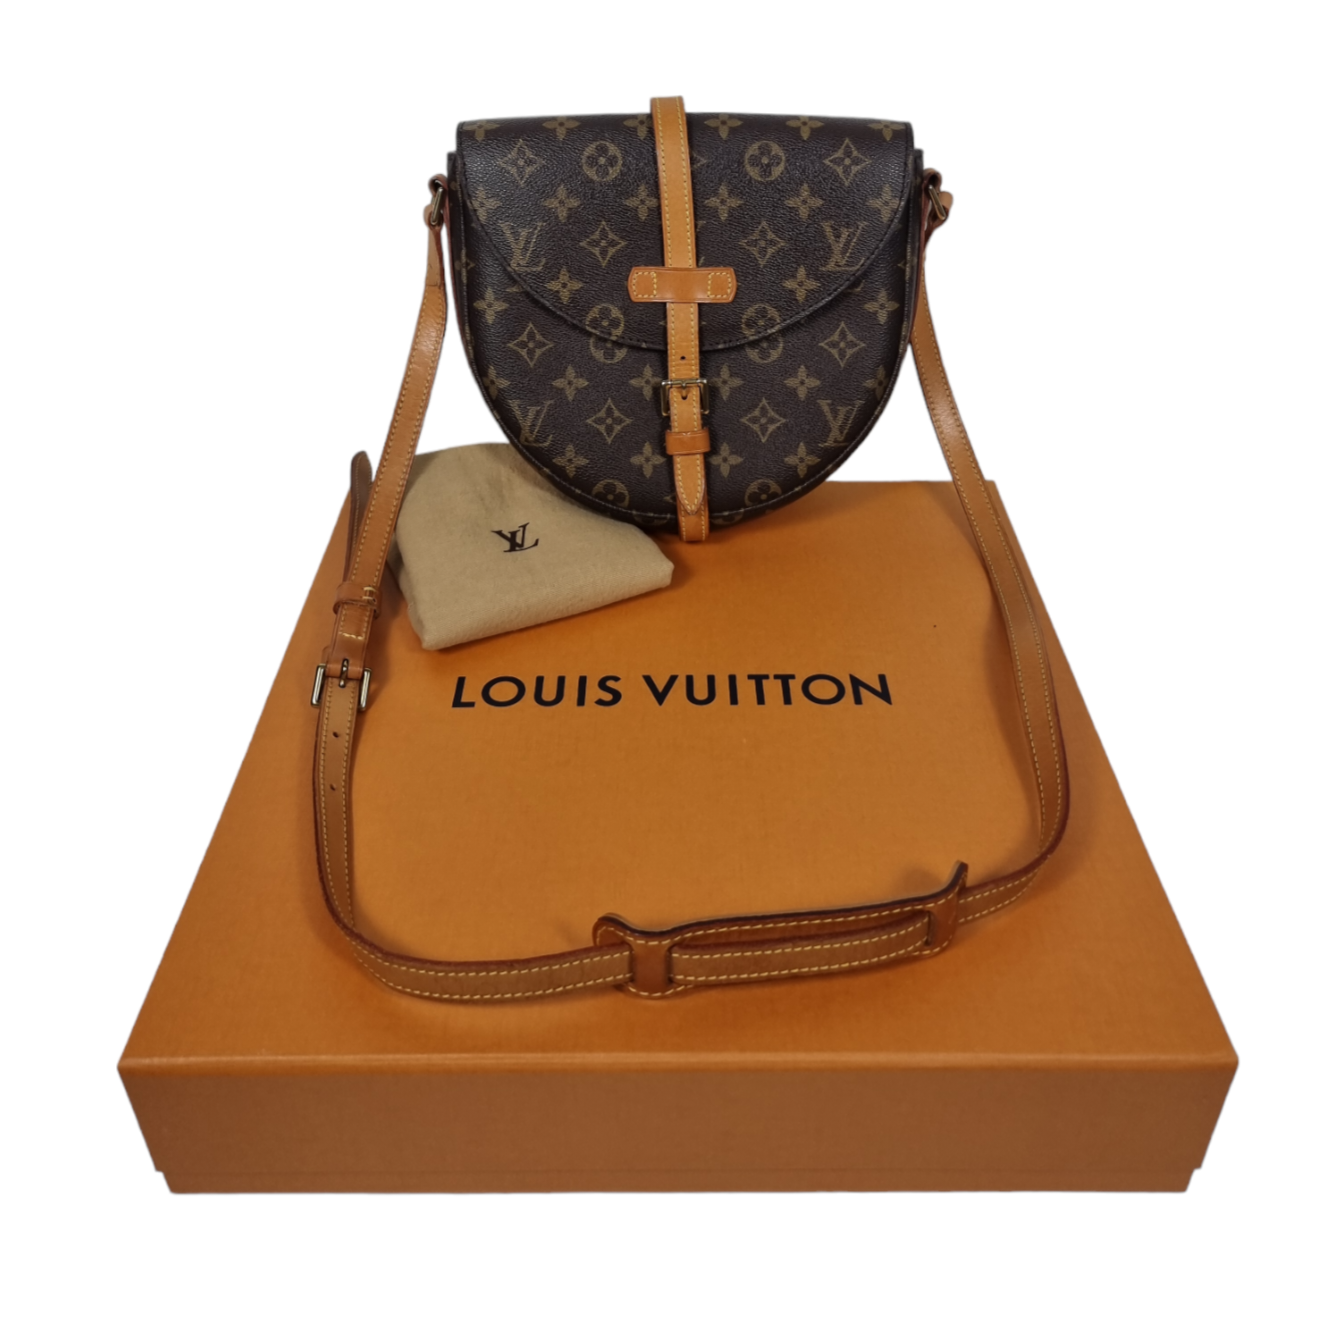 Lili accessoires - Gourmette Louis Vuitton en acier inoxydable